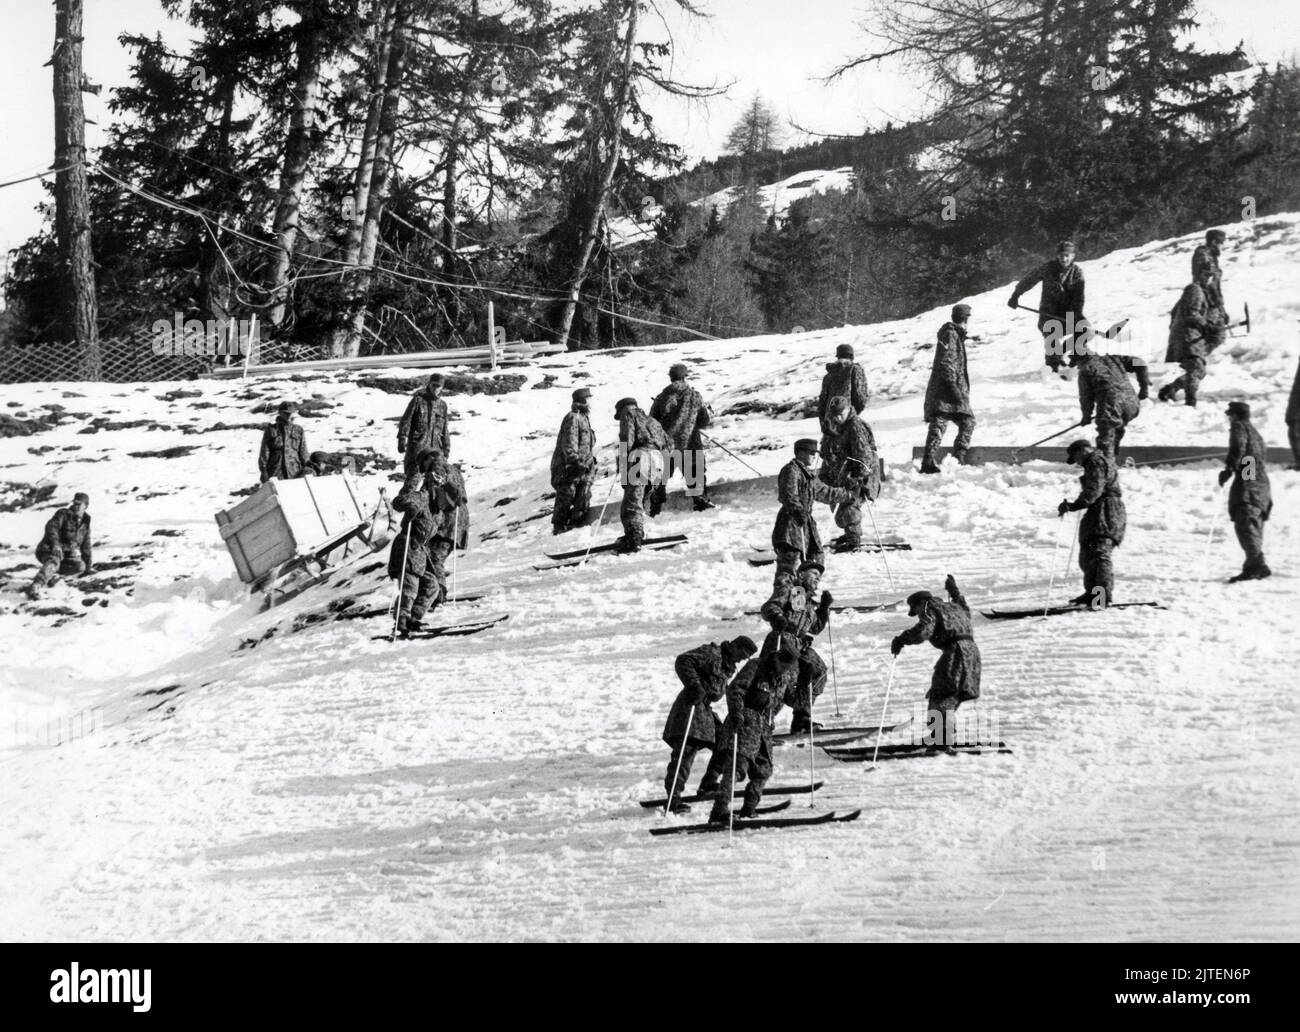 Original-Bildunterschrift: Winterolympiade 1964 in Innsbruck - Das Bundesheer präpariert die Piste für den Damen-Slalom in der Lizum, Innsbruck, Österreich 1964. Stock Photo